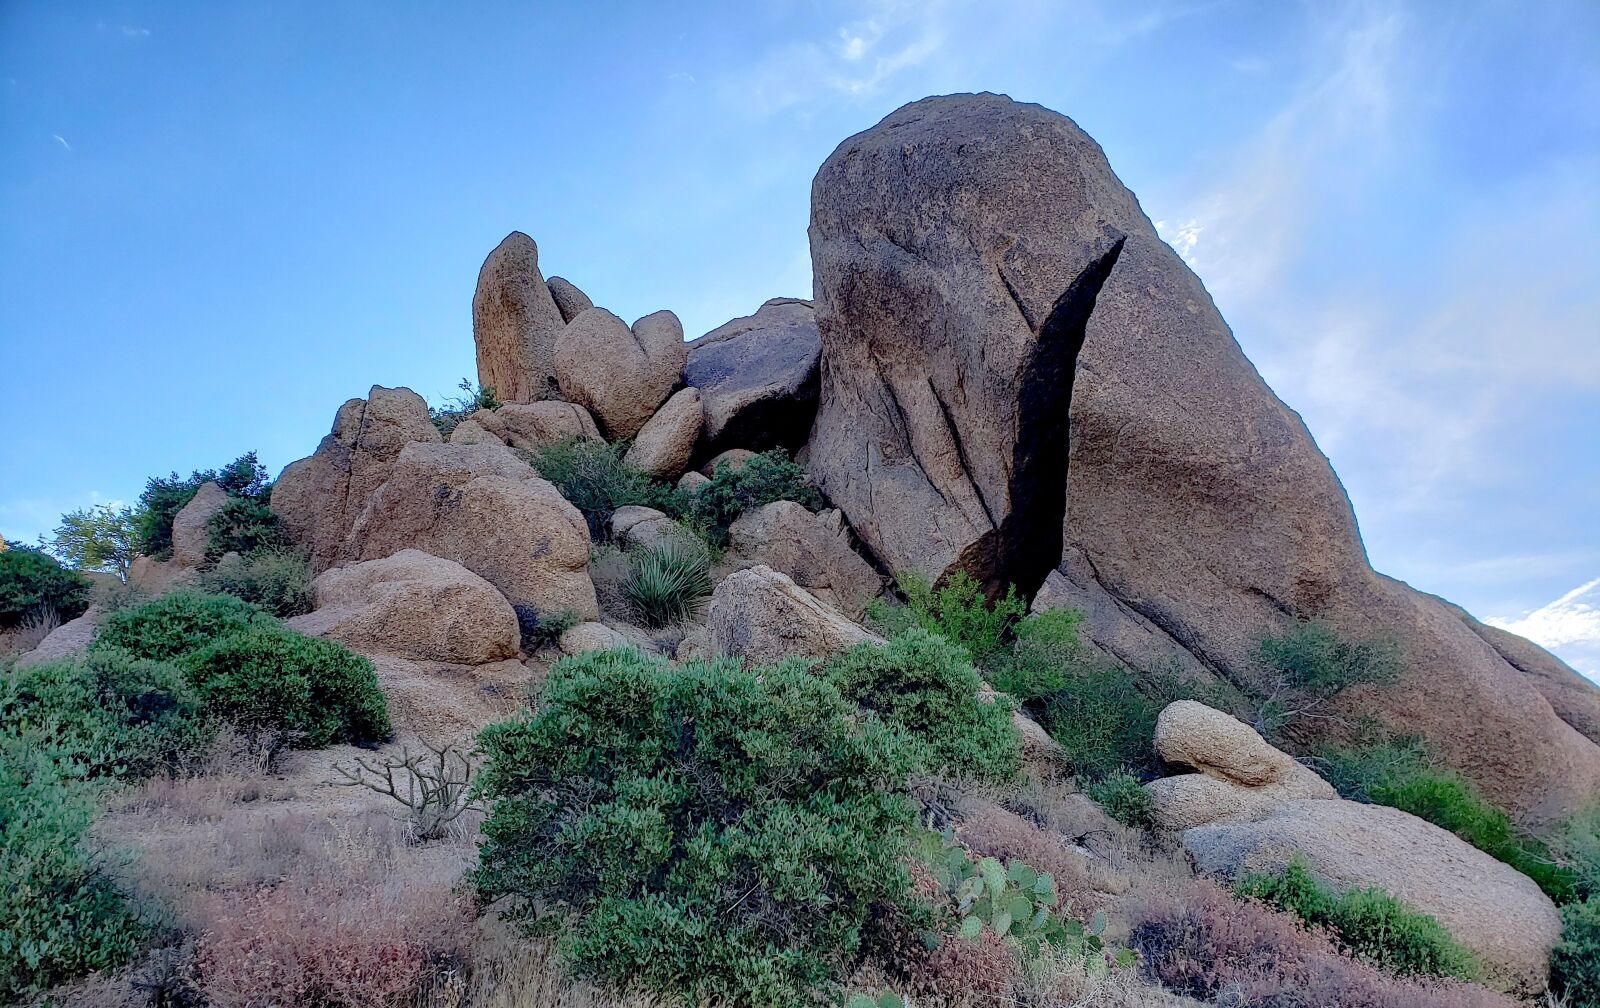 Samsung Galaxy S9+ sample photo. Rock outcropping, rock climbing photography